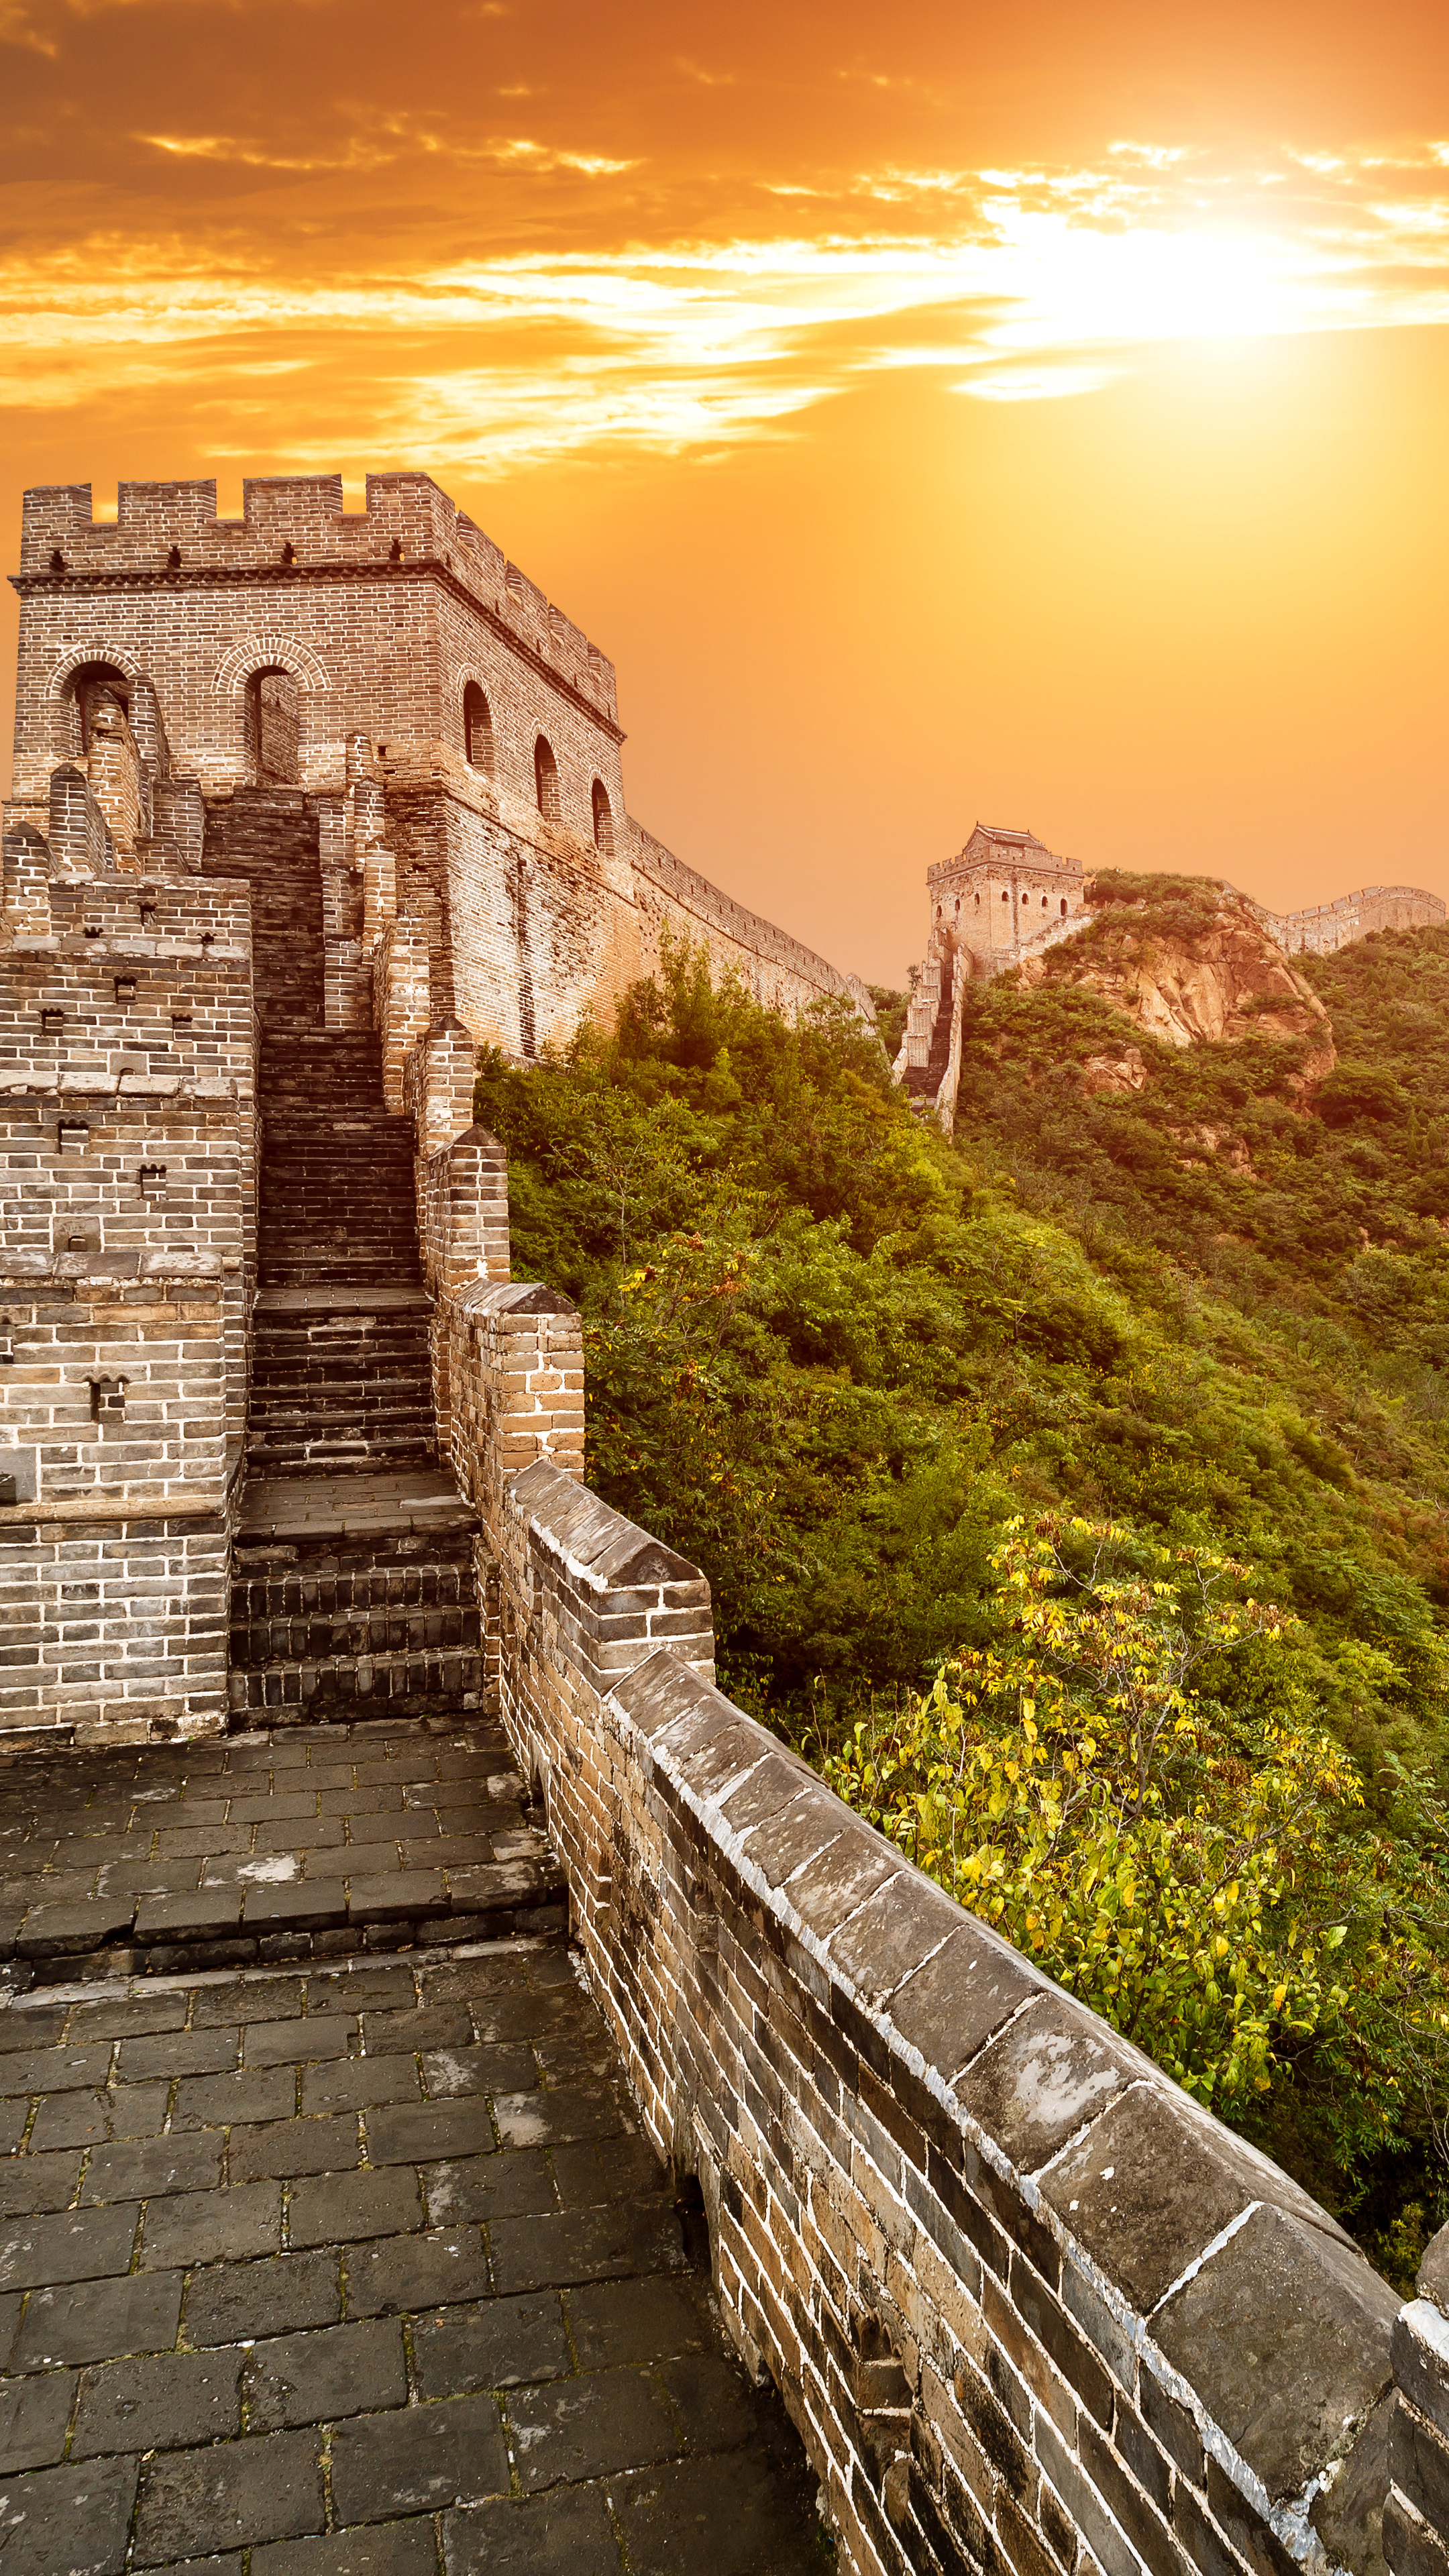 Man Made Great Wall Of China Wallpaper Id